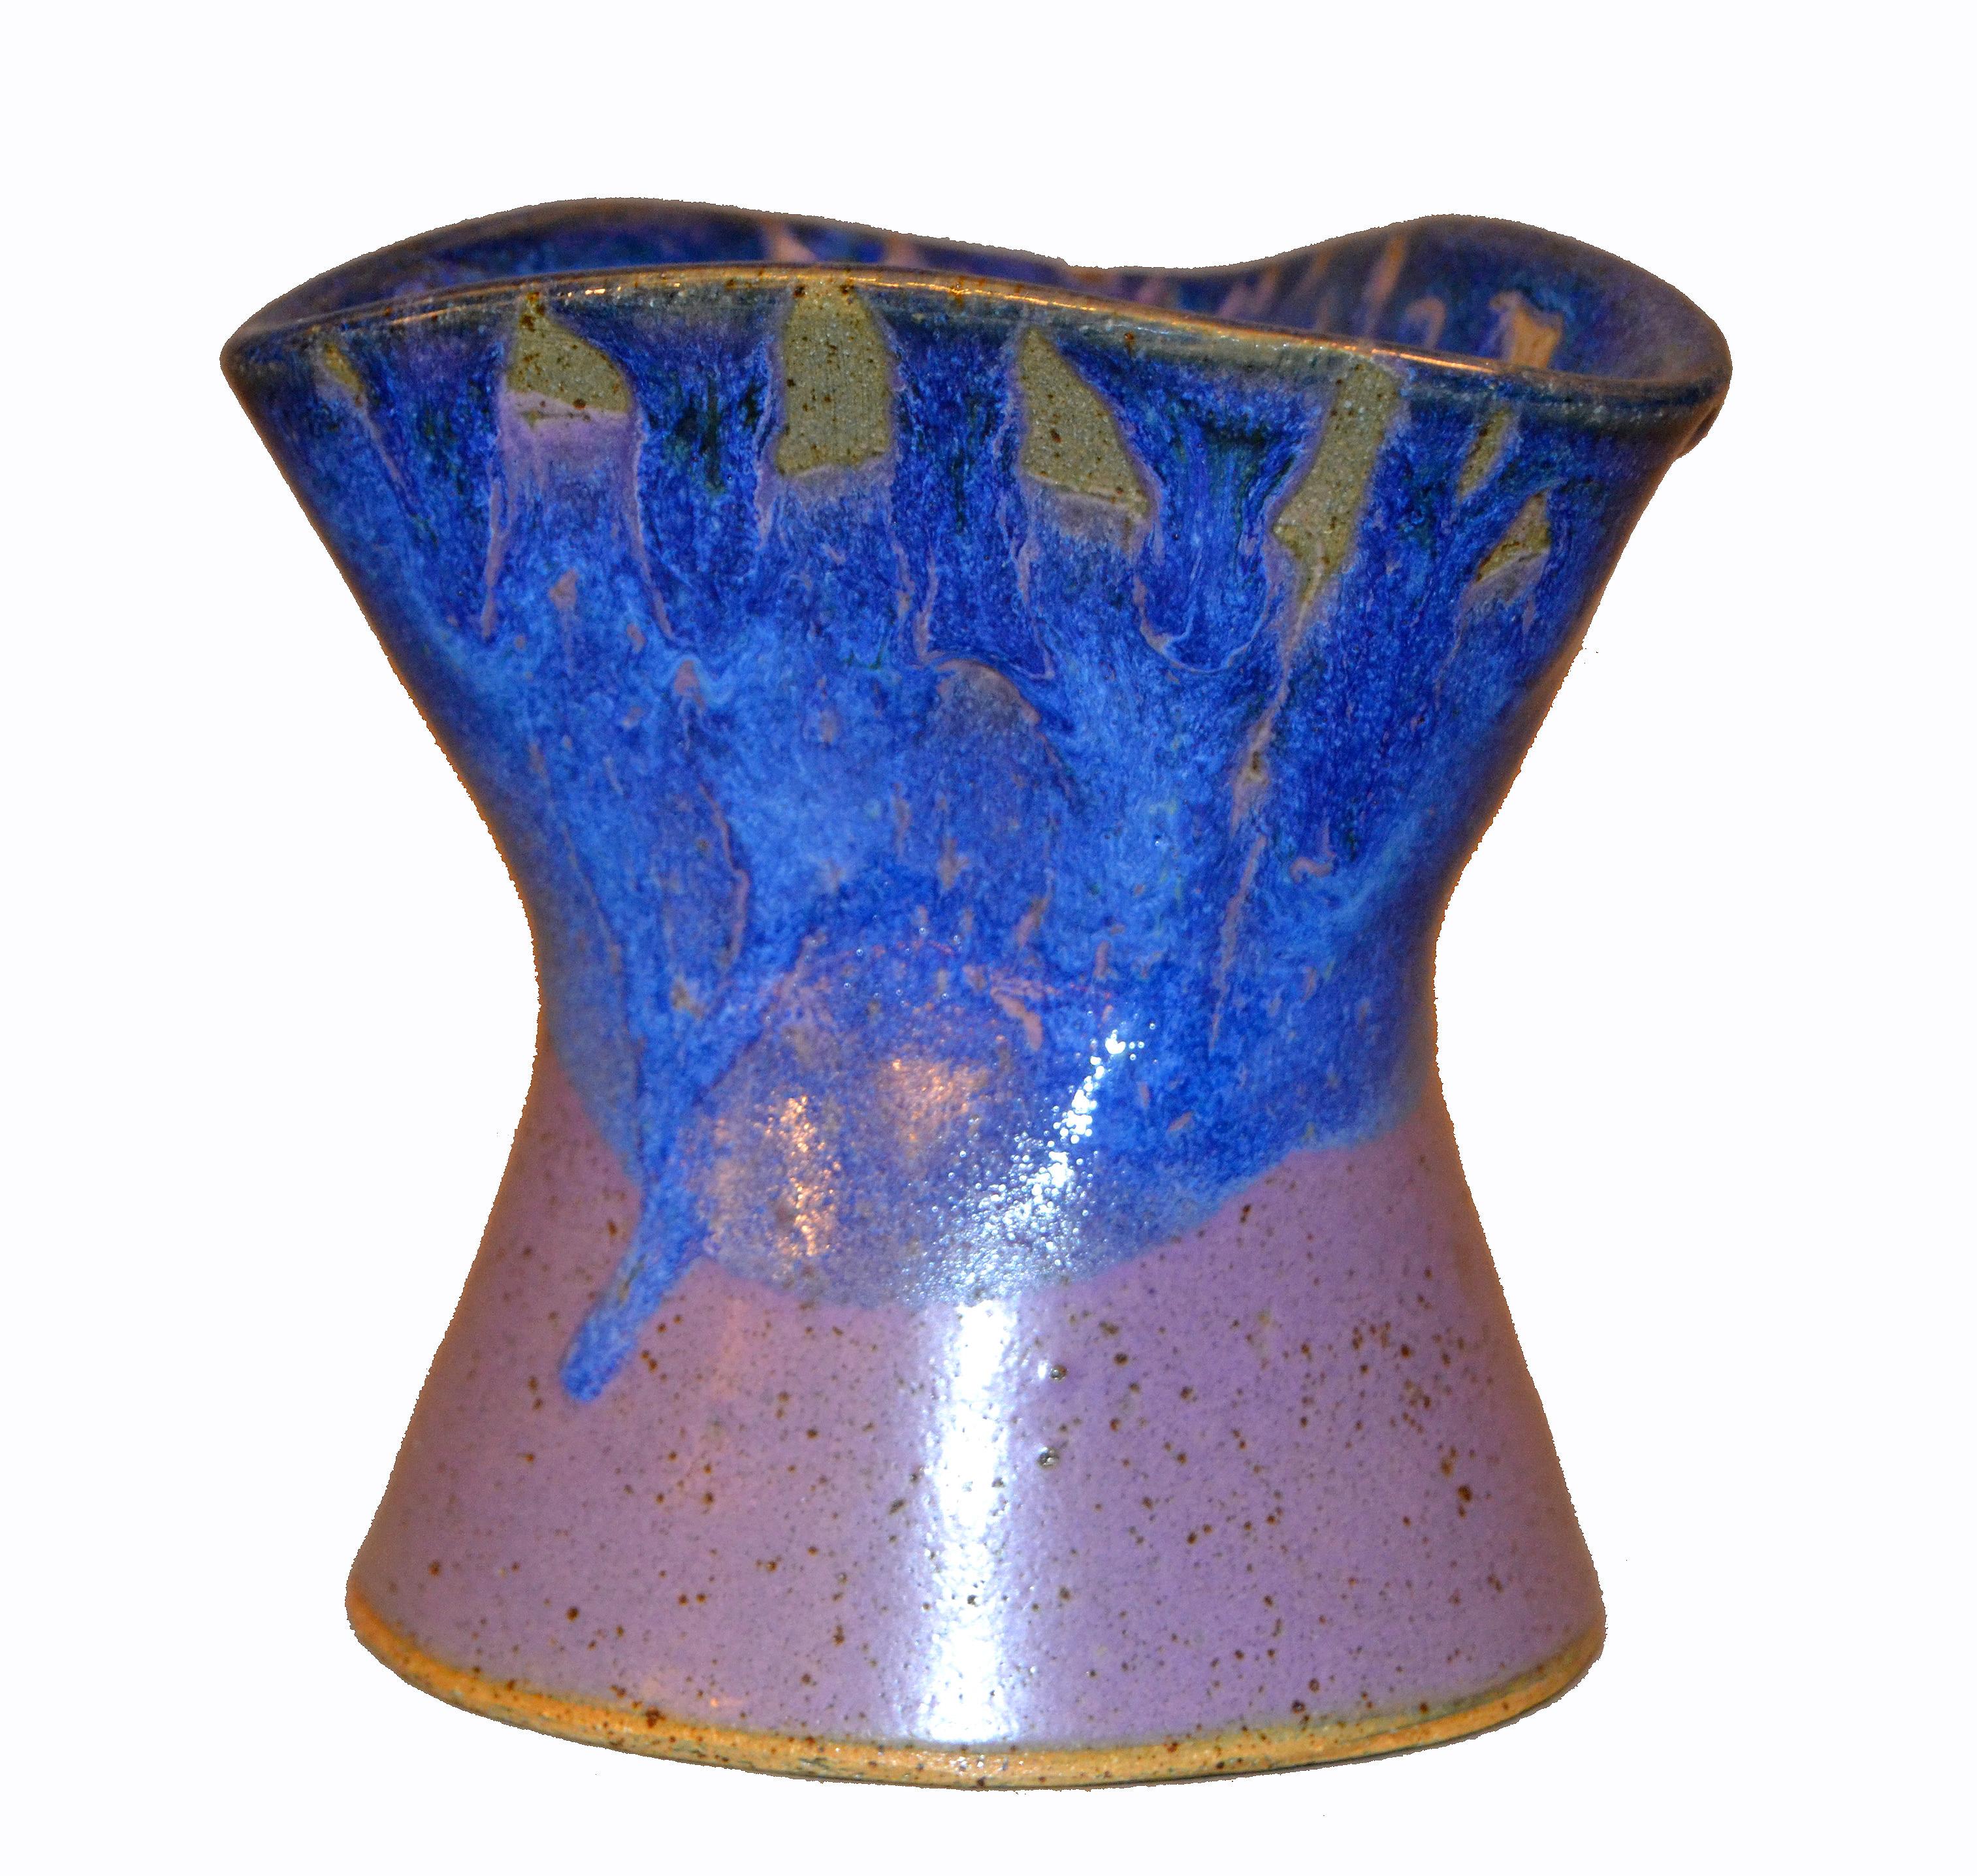 Glazed Signed Ann Newberry Glaze Pottery Purple, Blue & Gray Ceramic Bowl Vase Vessel